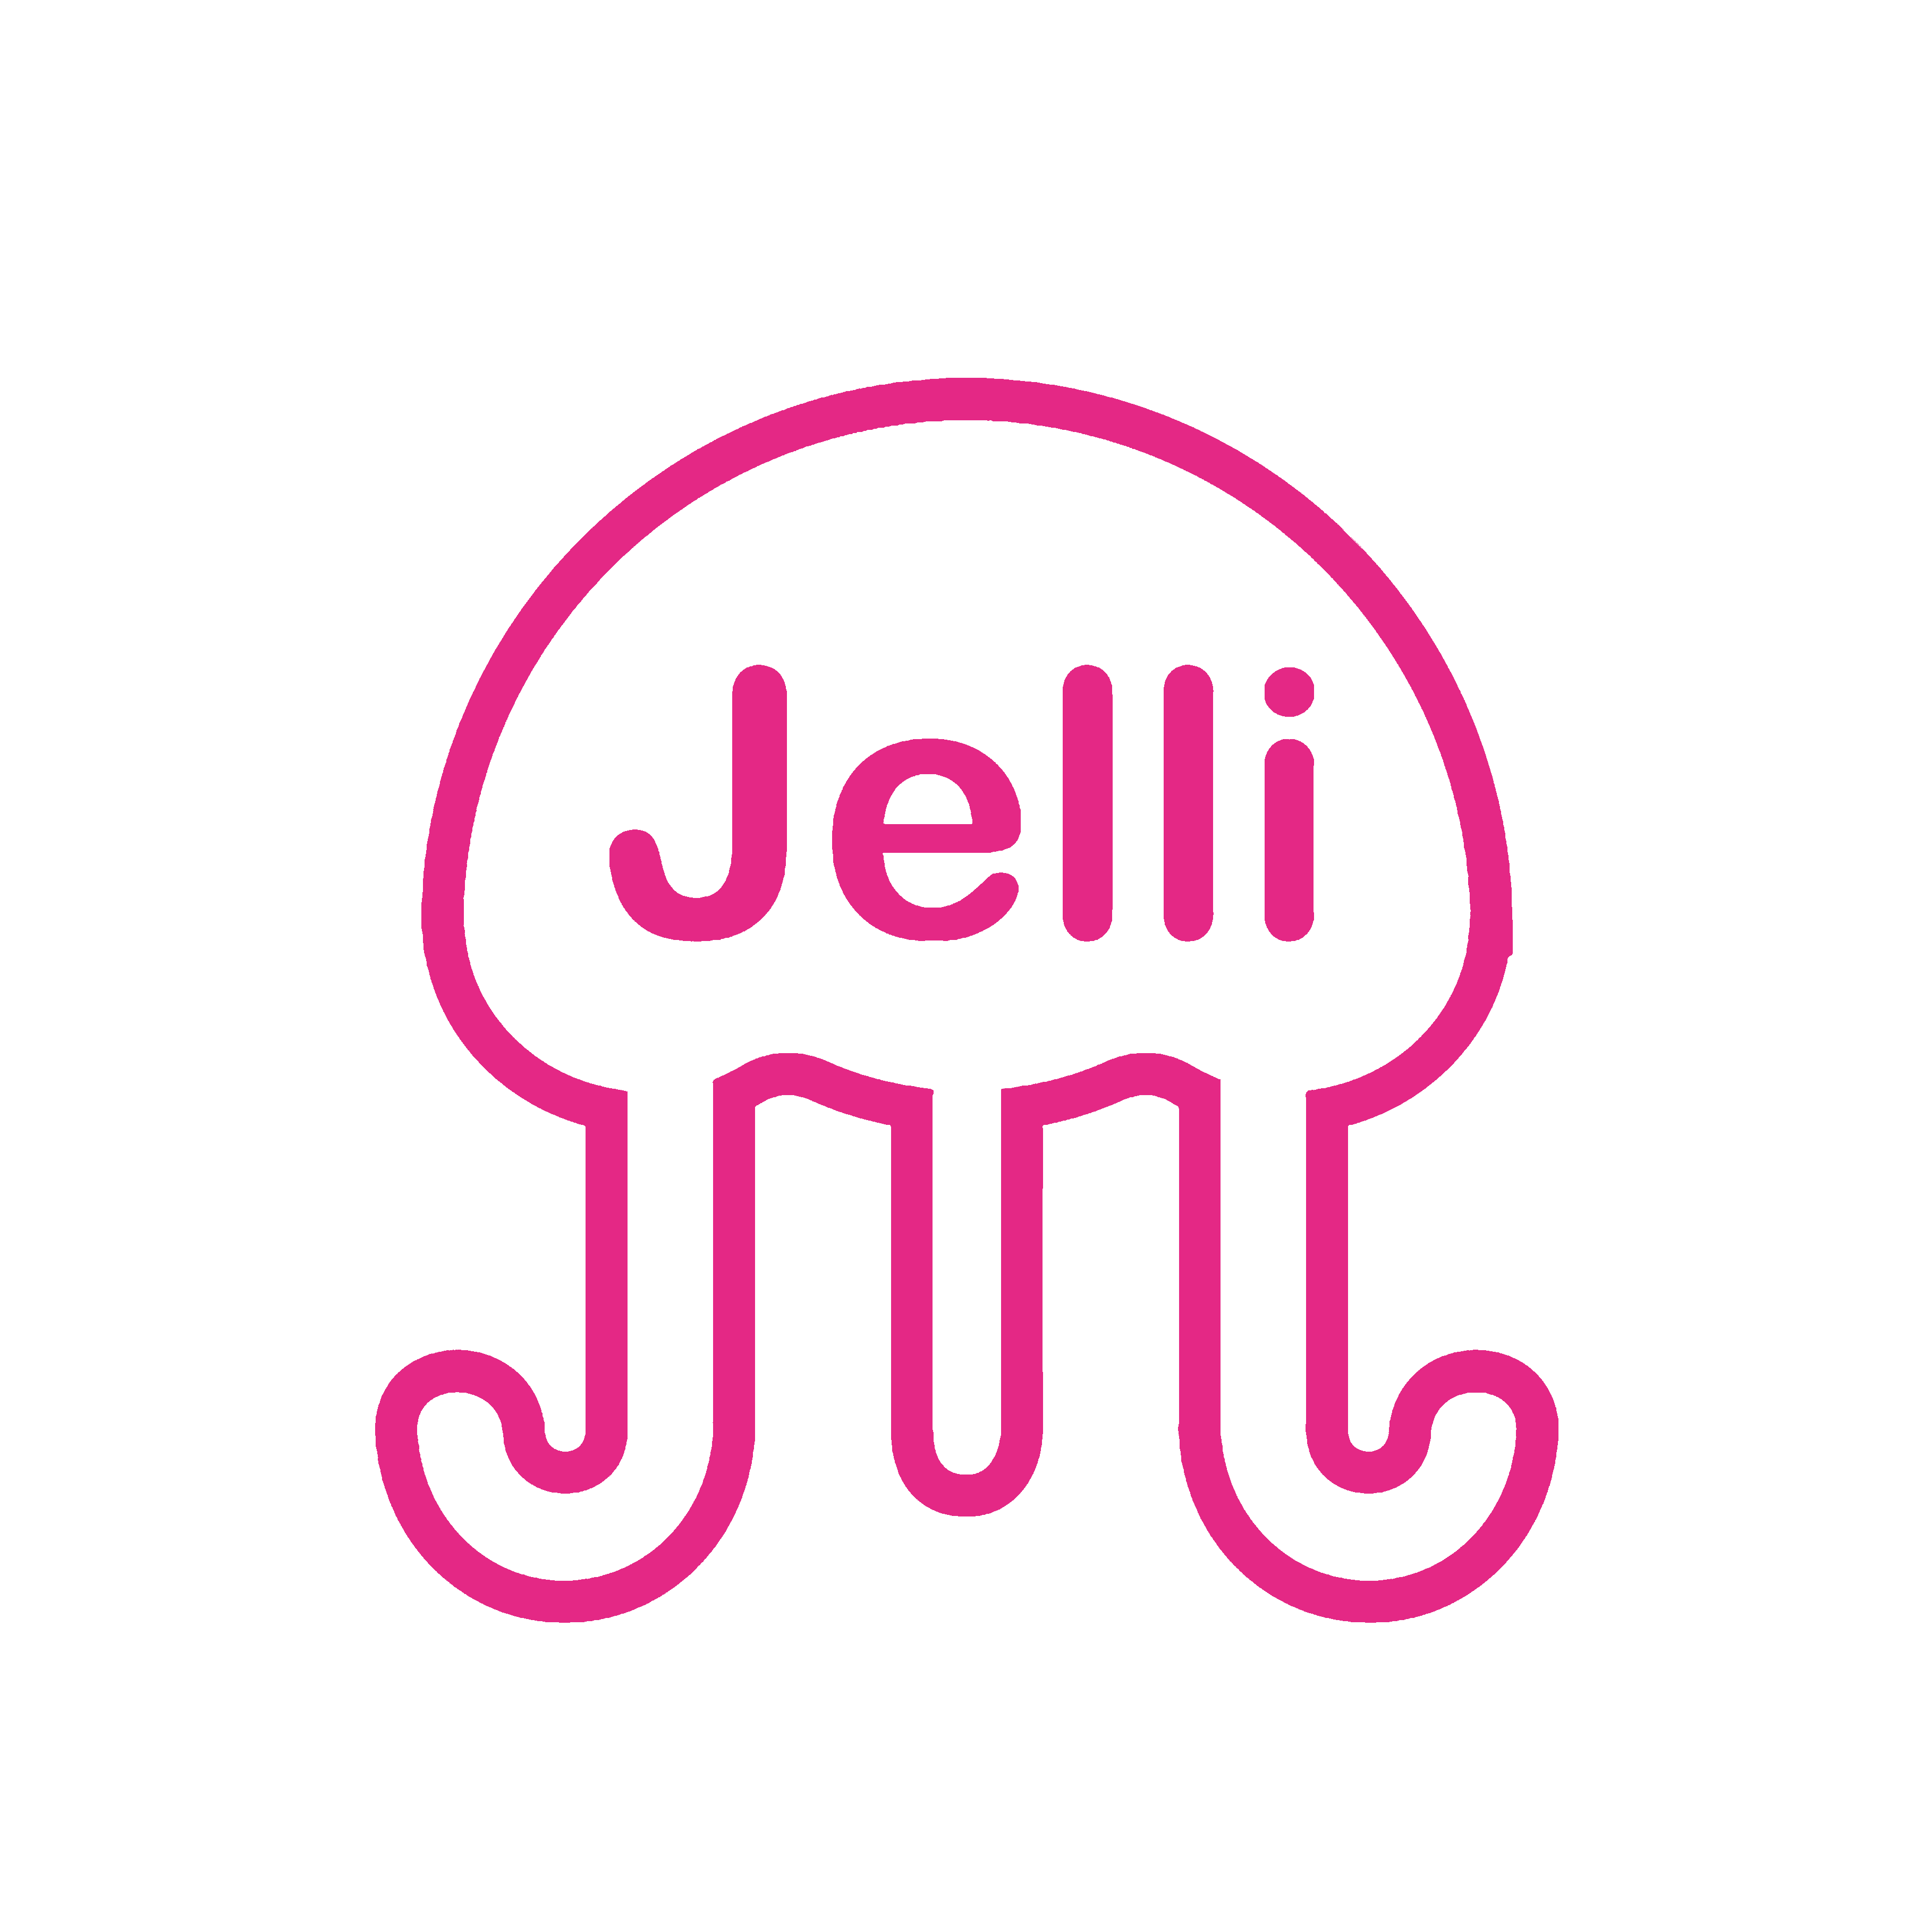 JelliM1